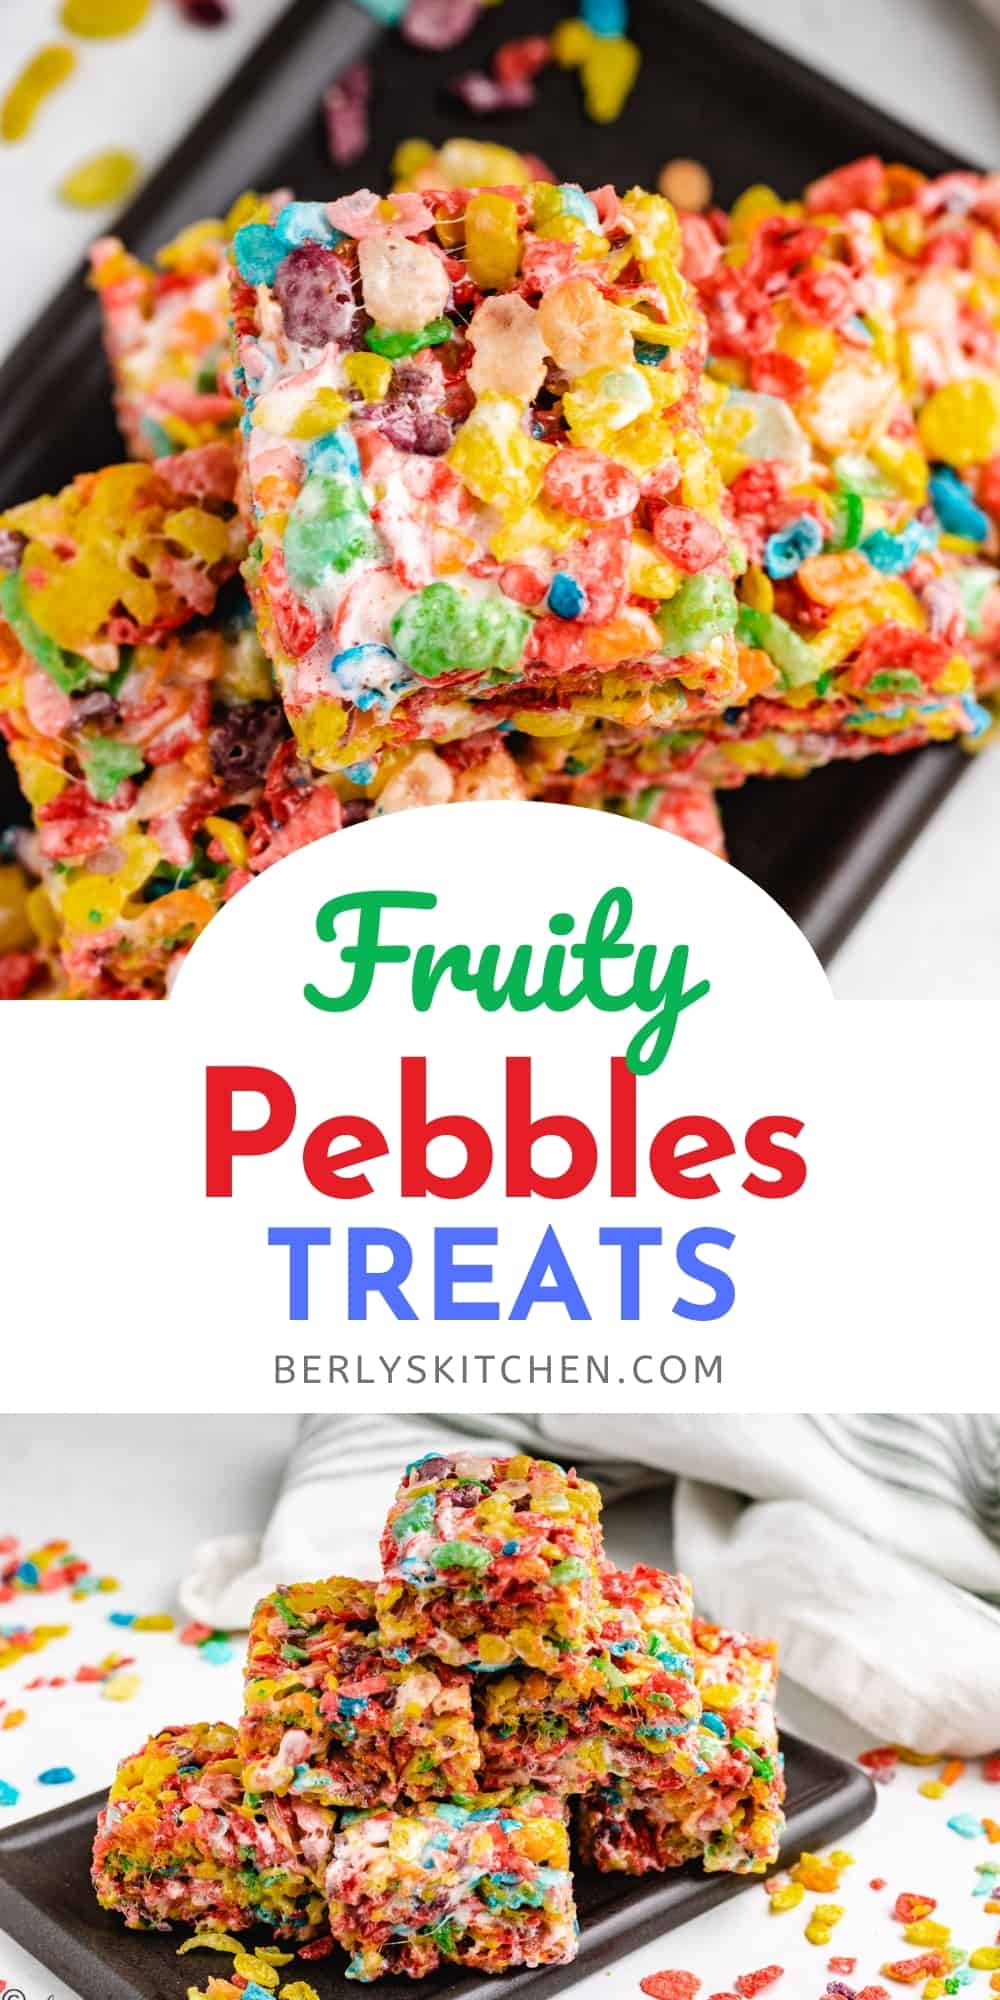 Fruity Pebbles Treats | Berly's Kitchen